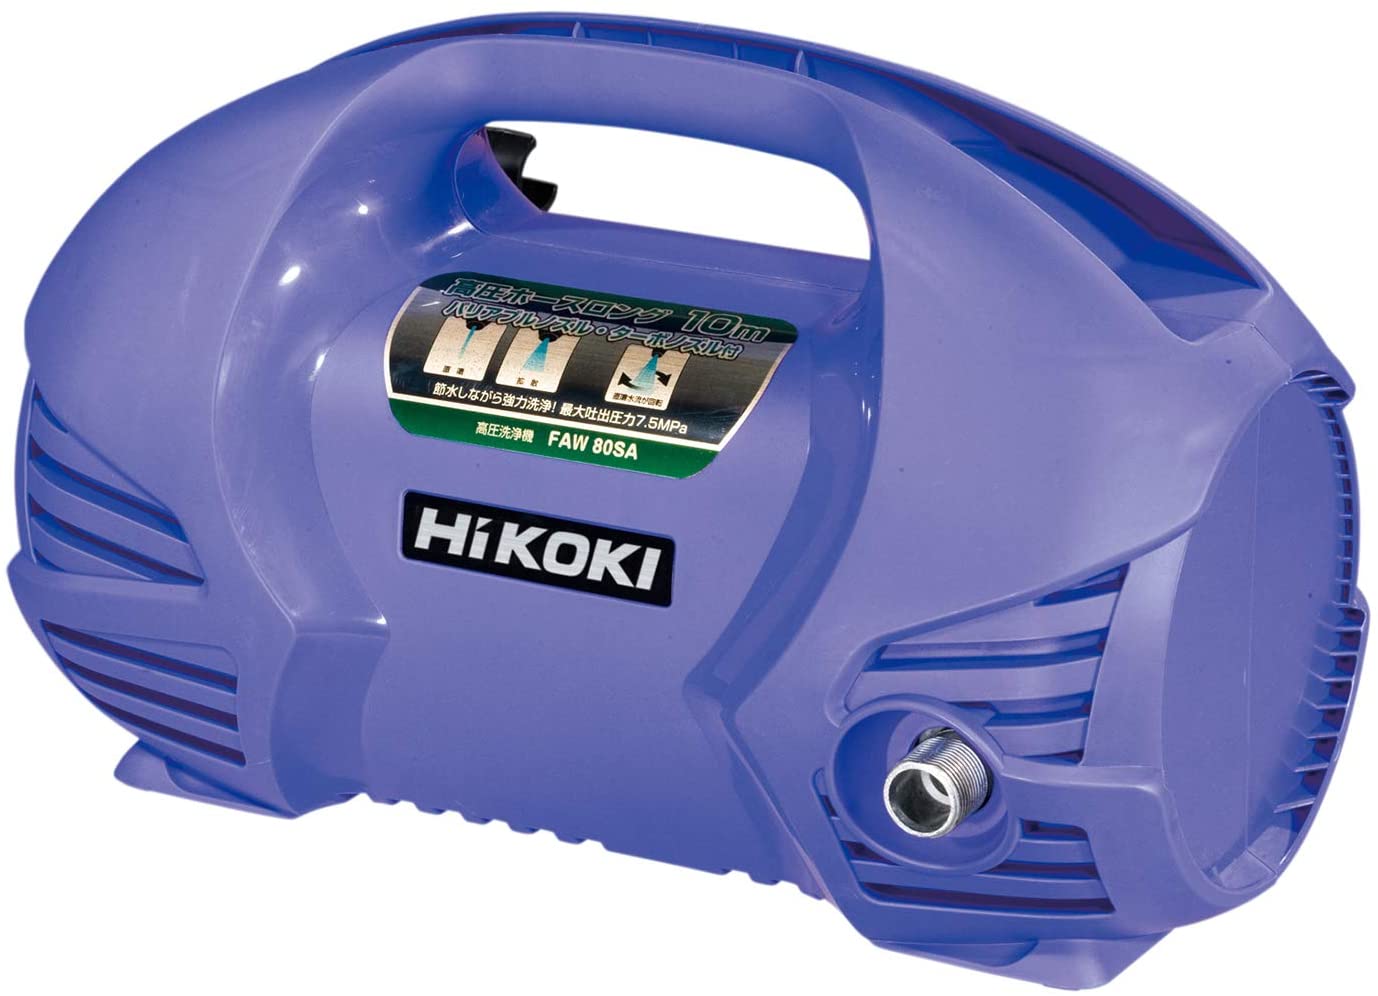 HiKOKI(ハイコーキ) 高圧洗浄機用延長高圧ホース 10m 0033-5219 - 電動工具